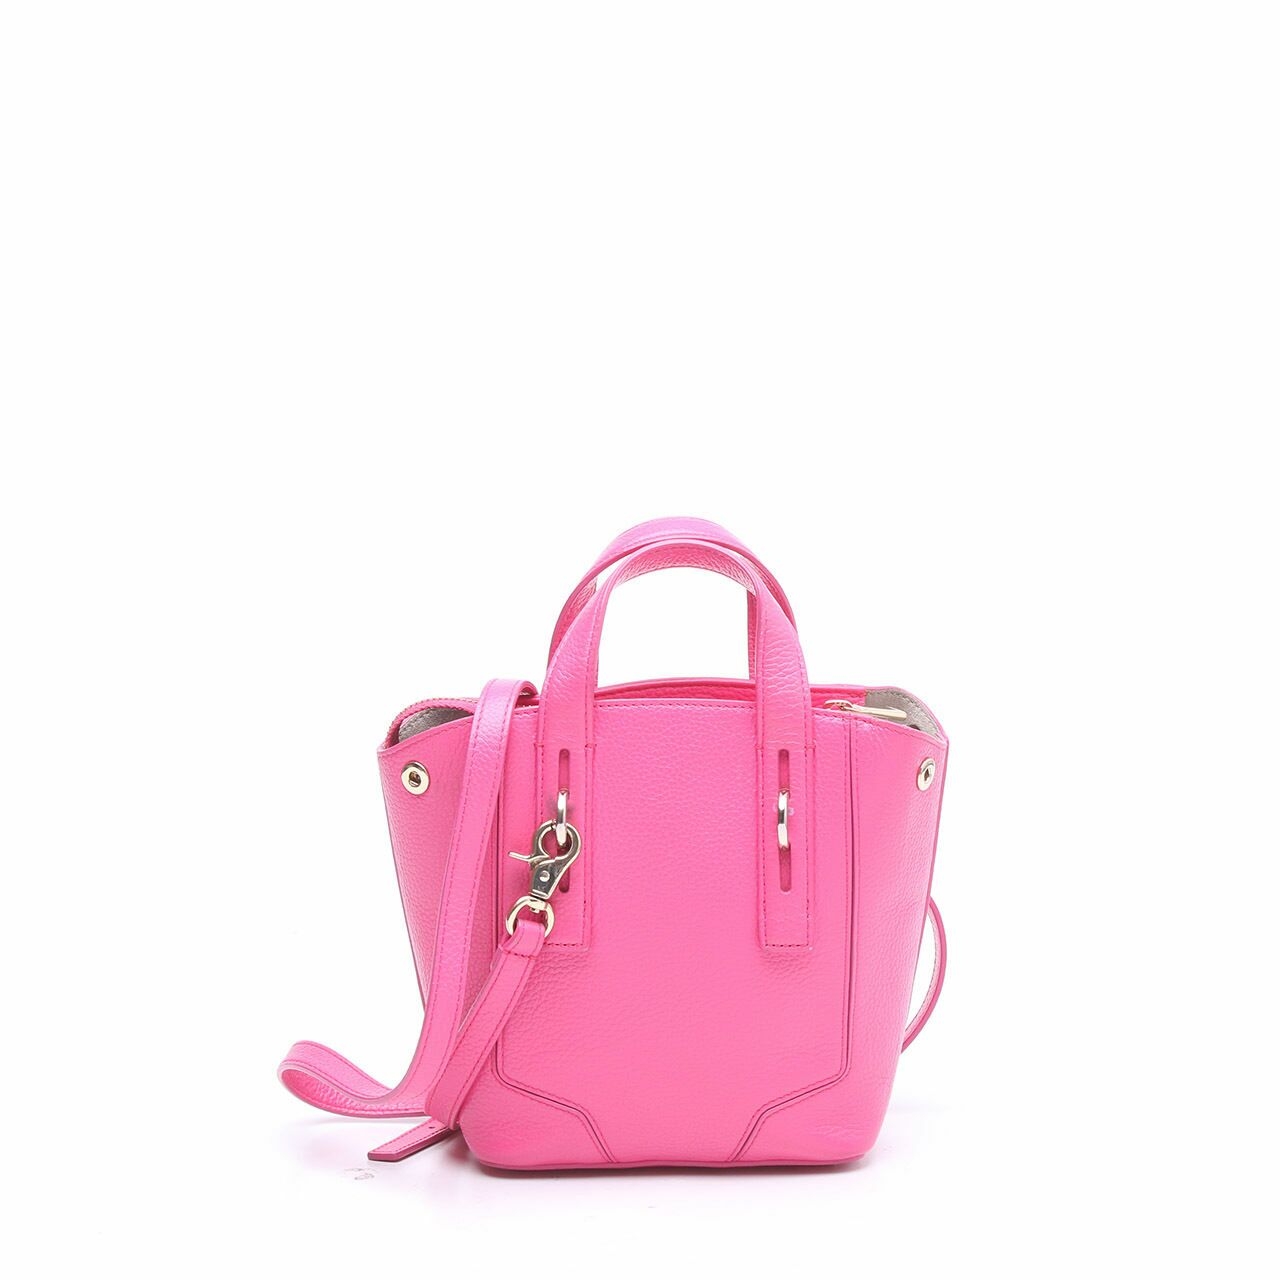 Furla Pink Leather Satchel Bag